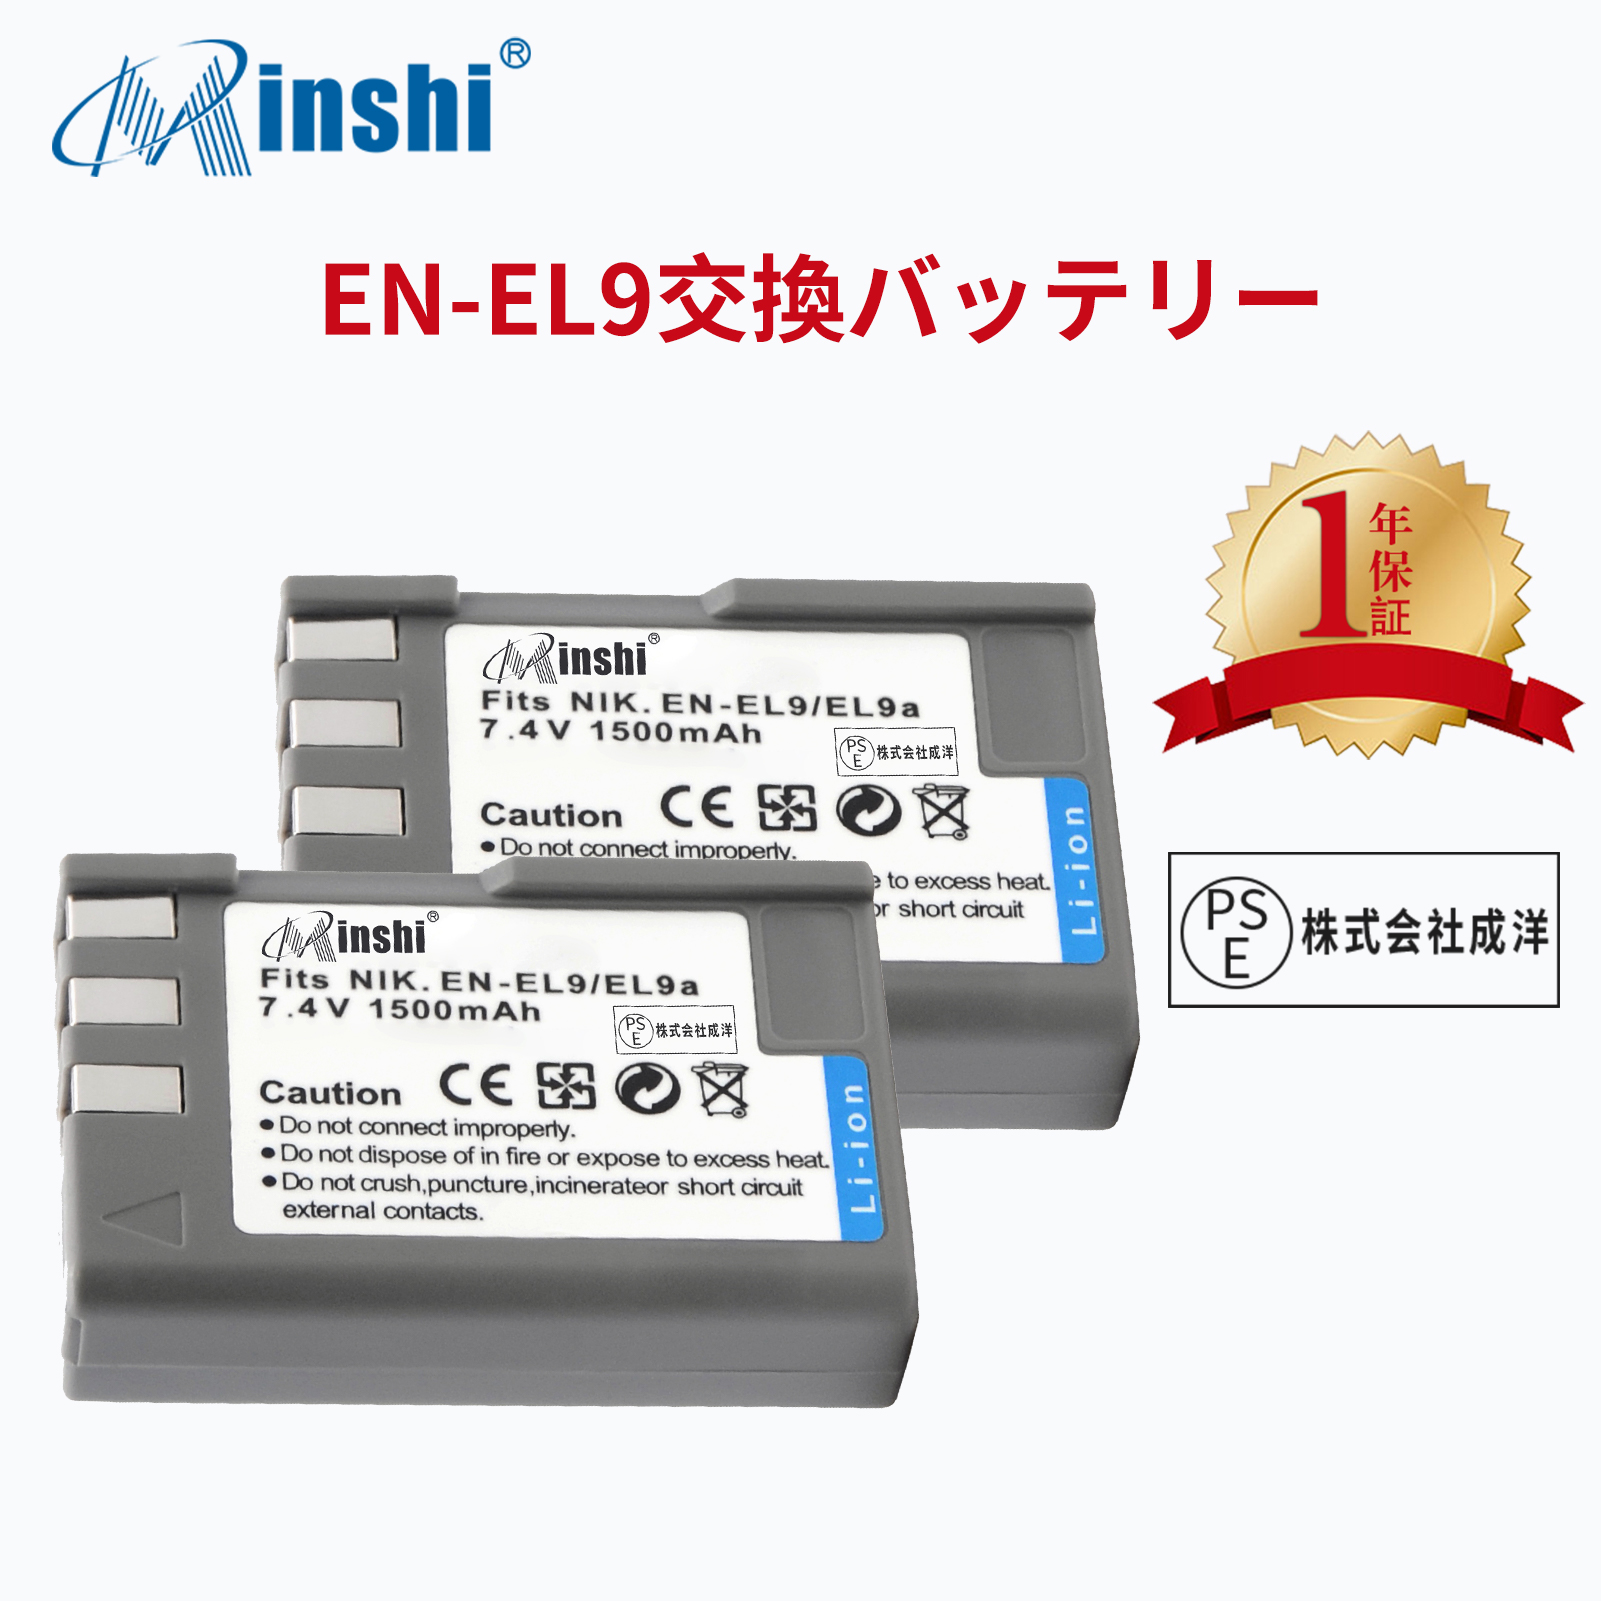 【２個セット】minshi NIKON EN-EL9e【1500mAh 7.4V】 D40 D60 D3000 D5000PSE認定済 高品質EN-EL9 EN-EL9a EN-EL9e交換用バッテリー